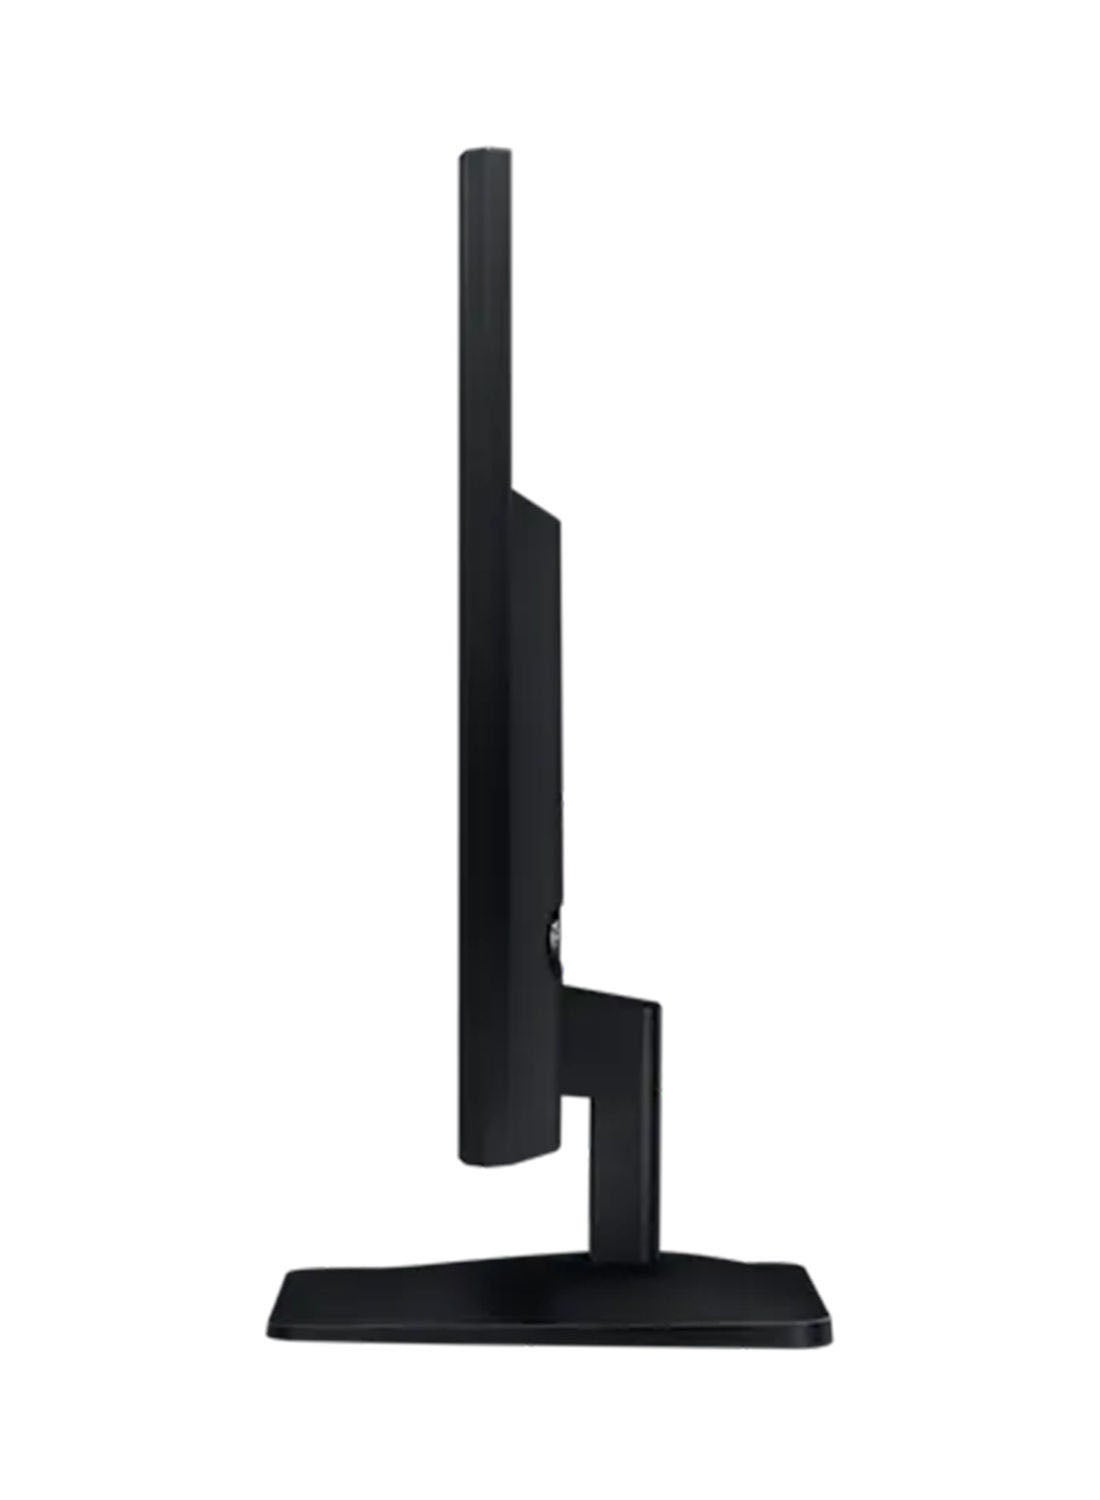 22-Inch Flat LED FHD (1920x1080) Monitor With HDMI, VGA 22inch Black 